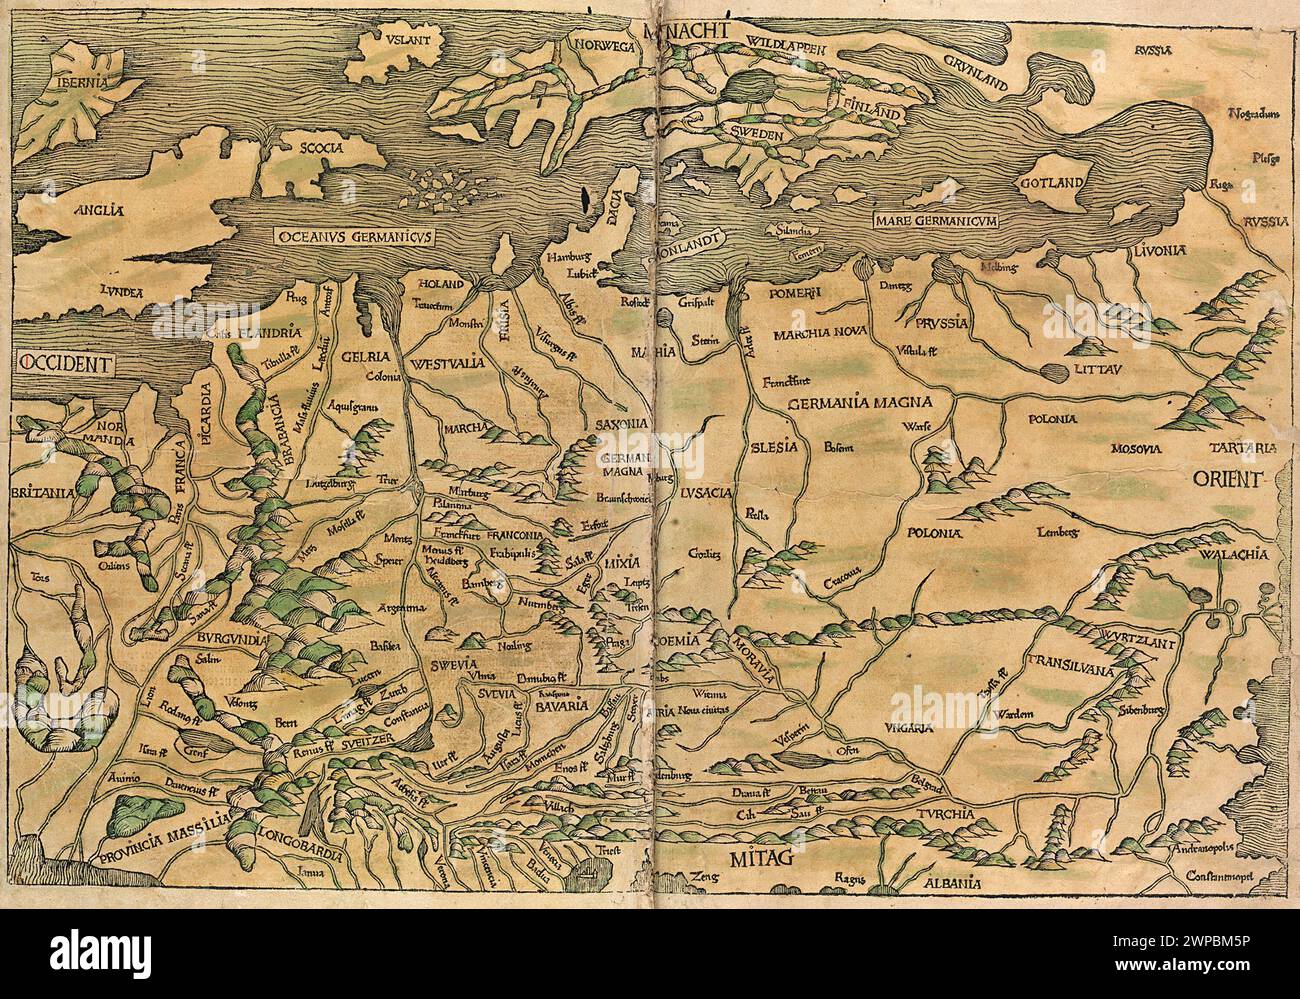 Ein schöner Holzschnitt aus dem Jahr 1493 einer Karte von Nordeuropa. Diese Illustration stammt aus der Nürnberger Chronik, die eine Enzyklodpedie über Weltereignisse, Mythologie und christliche Geschichte ist. Dieses außergewöhnliche Werk war eines der frühesten Bücher, die jemals gedruckt wurden und das erste, das erfolgreich Text und Bilder integriert. Stockfoto